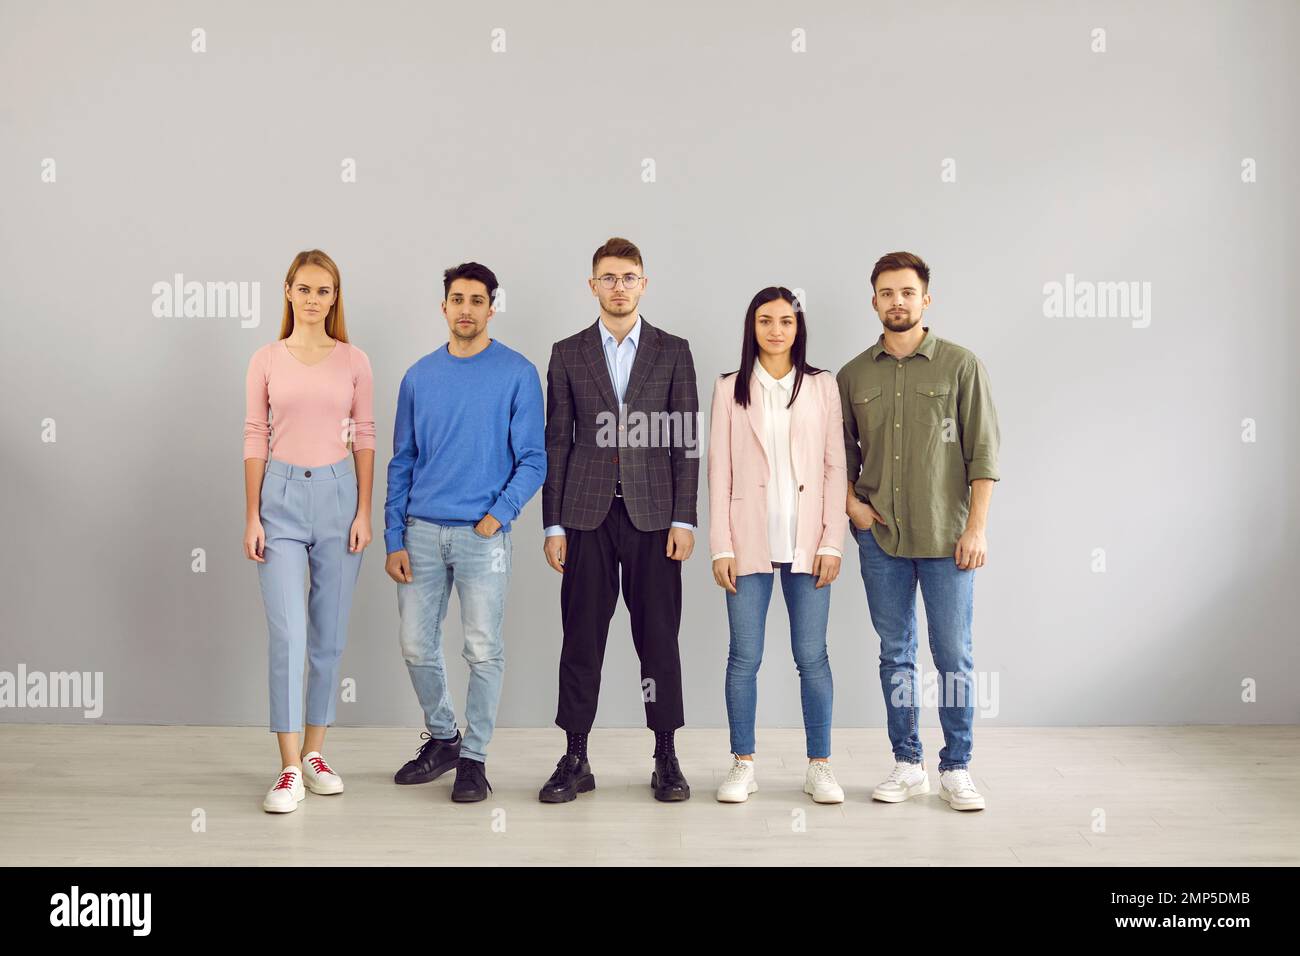 Gruppenporträt von fünf seriösen jungen Menschen in eleganten Freizeitkleidung, die im Studio stehen Stockfoto